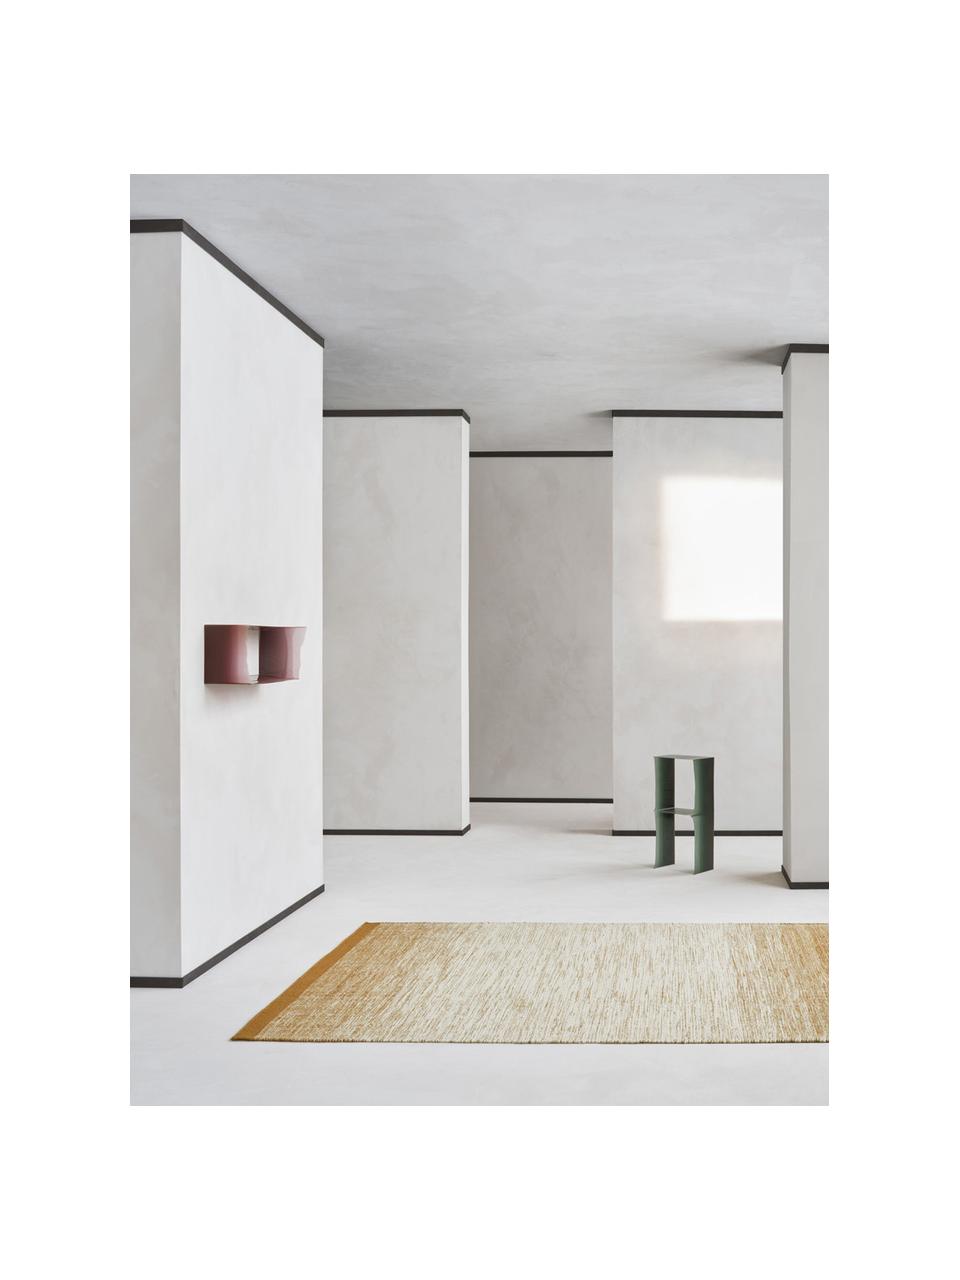 Ručne tkaný vlnený koberec s gradientom Lule, Okrovožltá, béžová